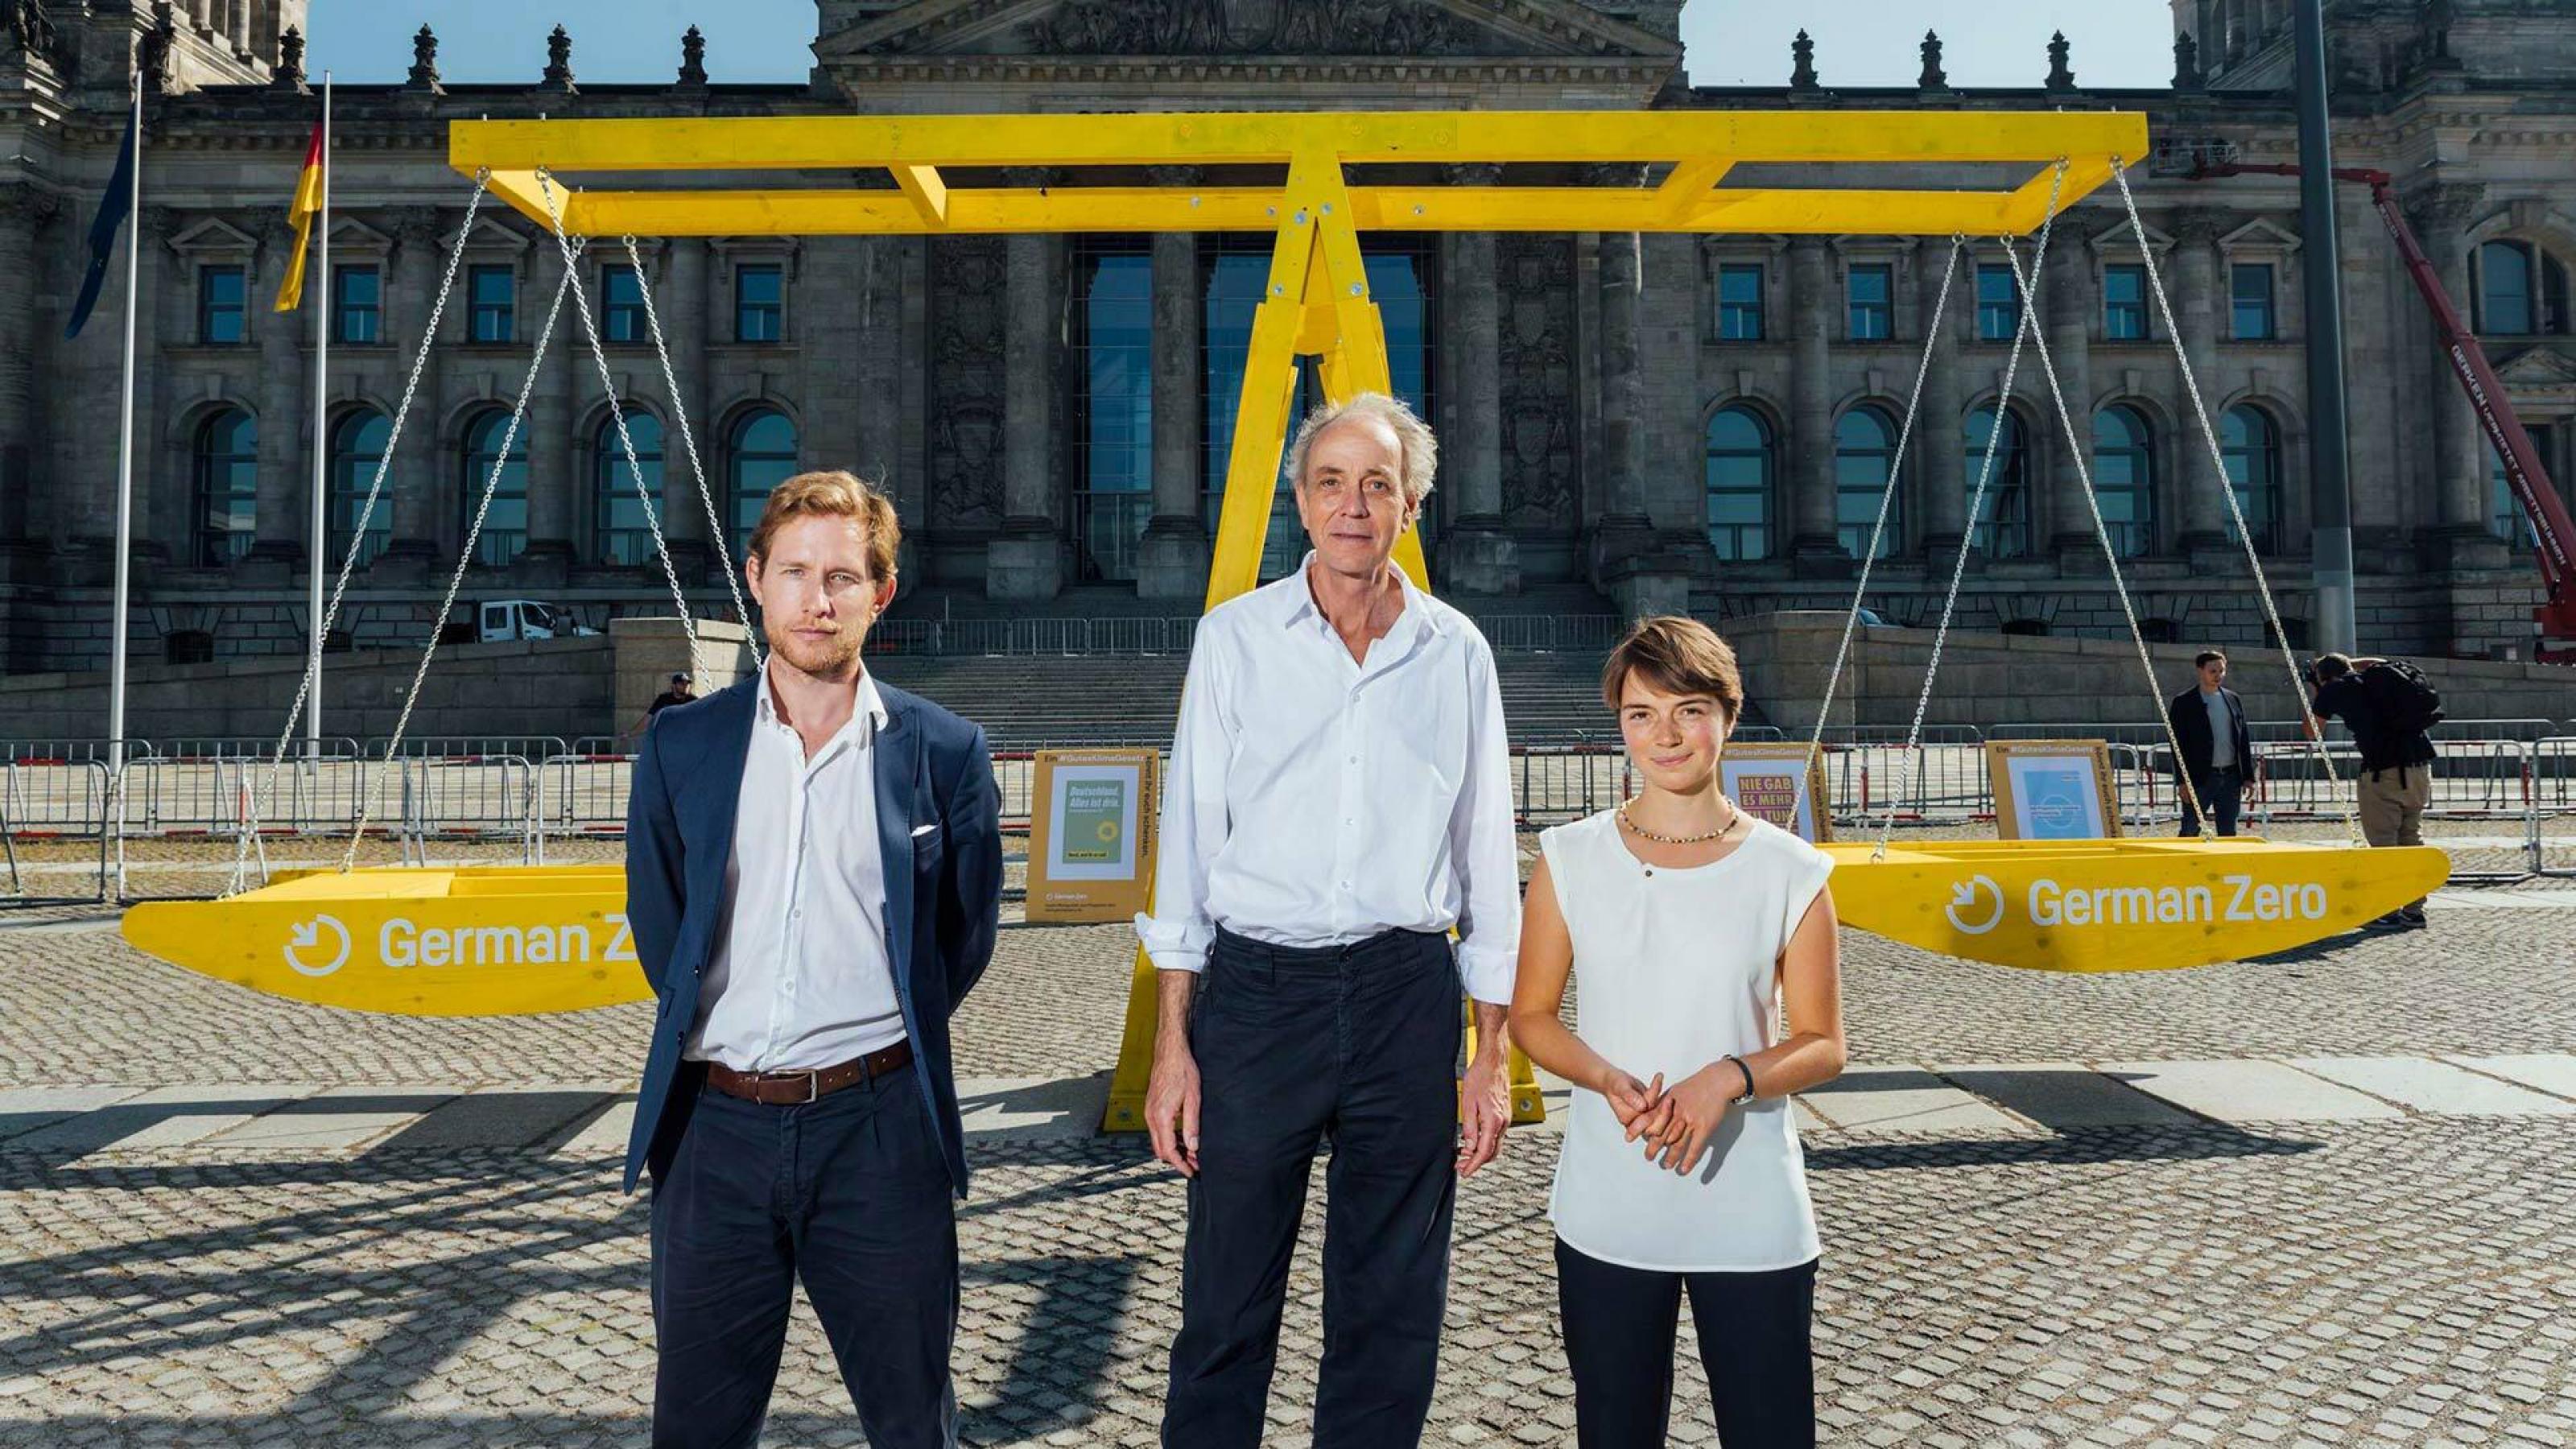 Julian Zuber, Stephan Breidenbach und Lea Nesselhauf vor einer großen symbolischen Waage vor dem Reichstagsgebäude in Berlin